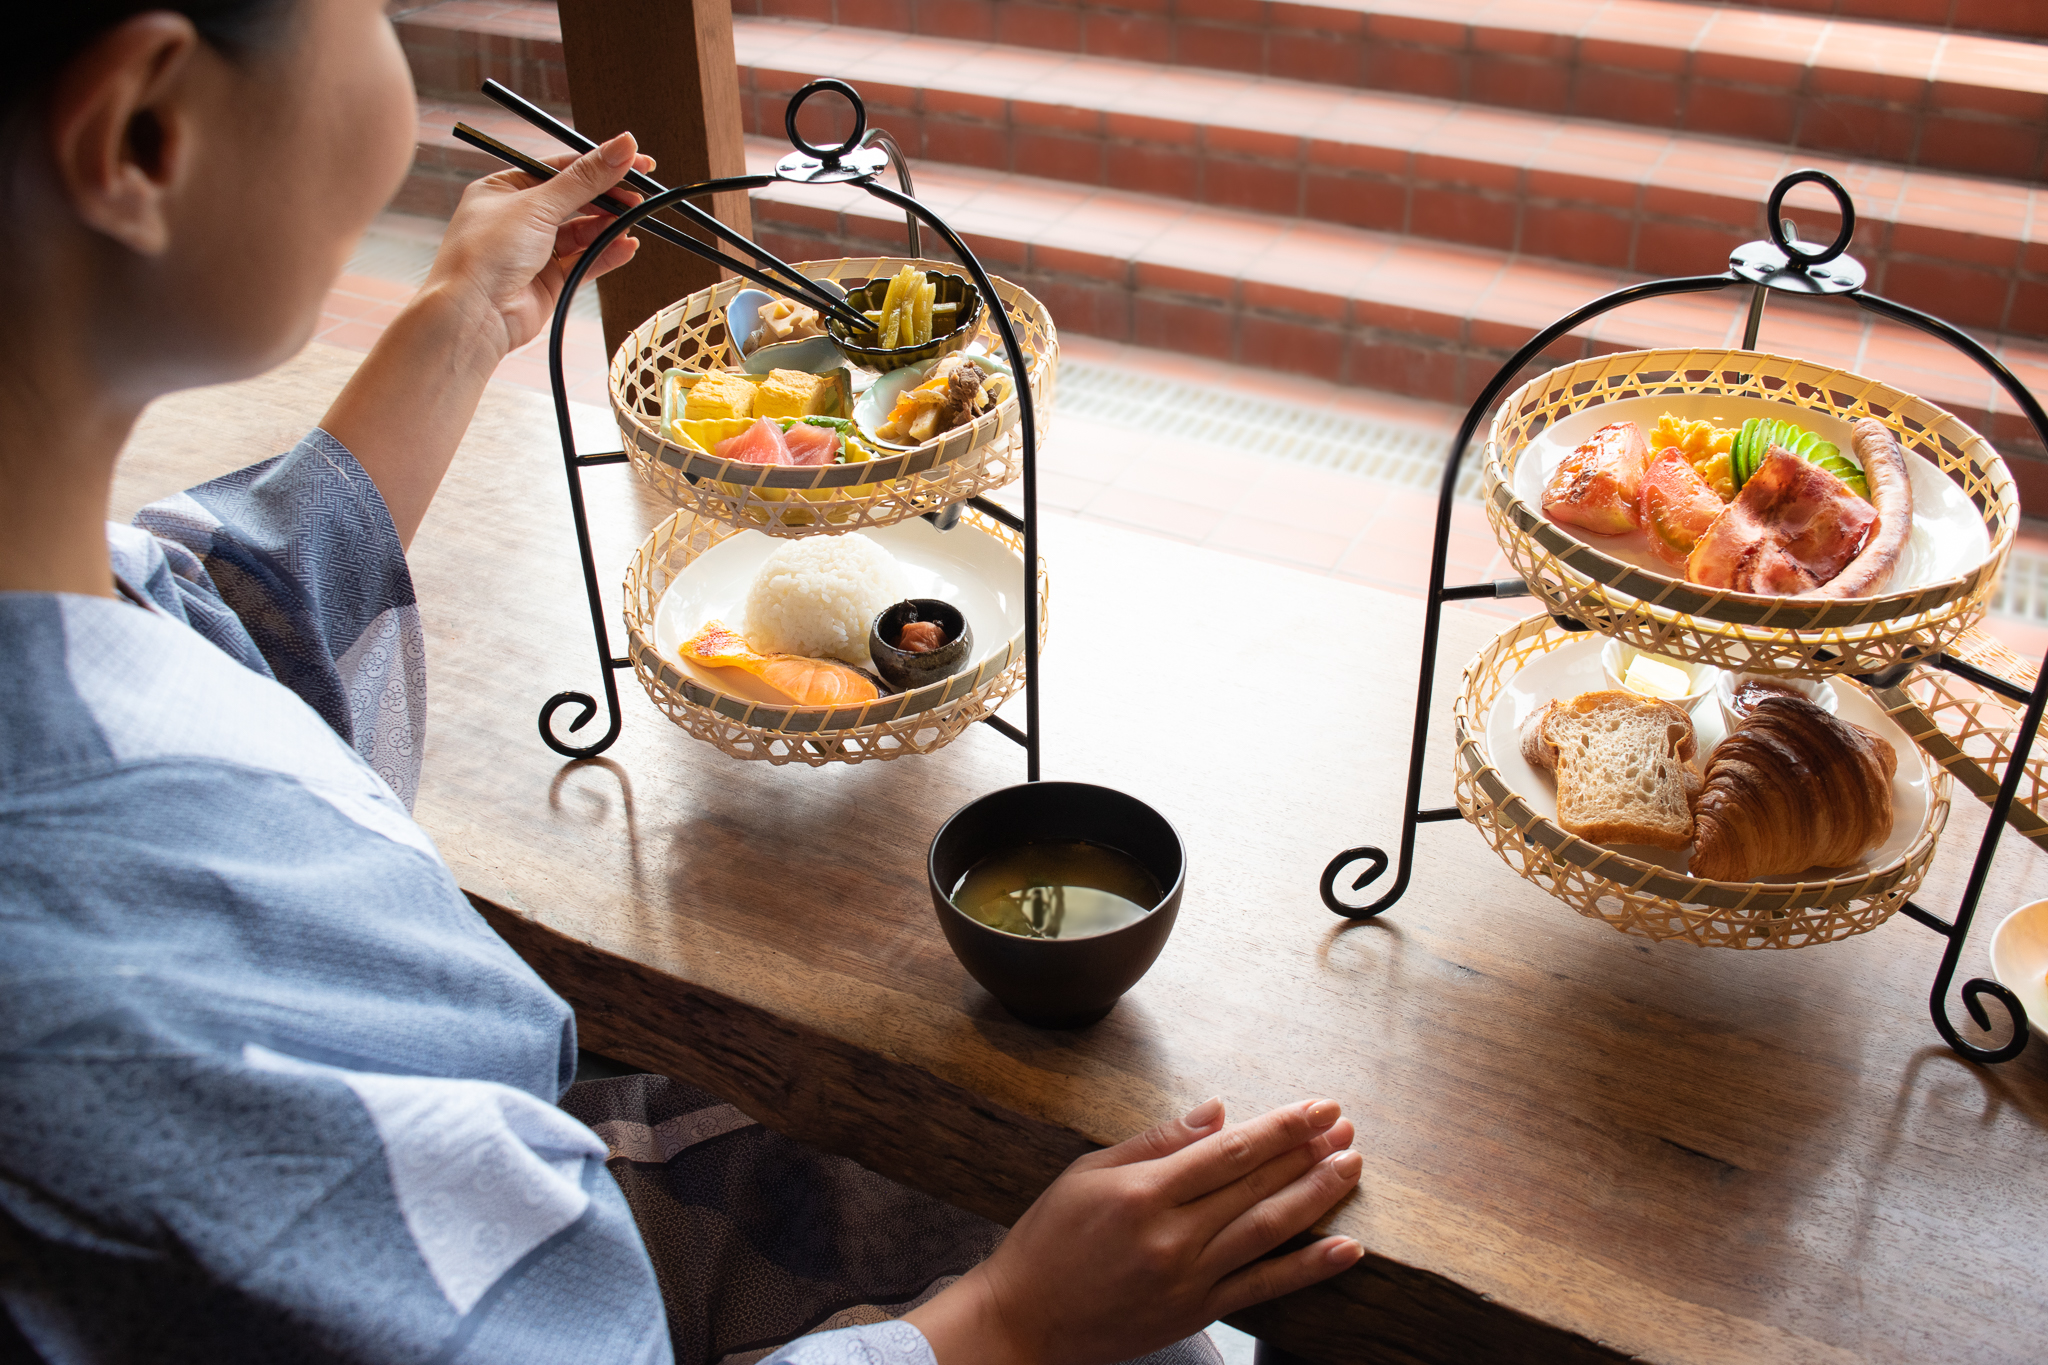 京都のおしゃれで おいしいホテル朝食を オリジナルの和モダン朝食販売開始 ジャパンリゾート株式会社のプレスリリース